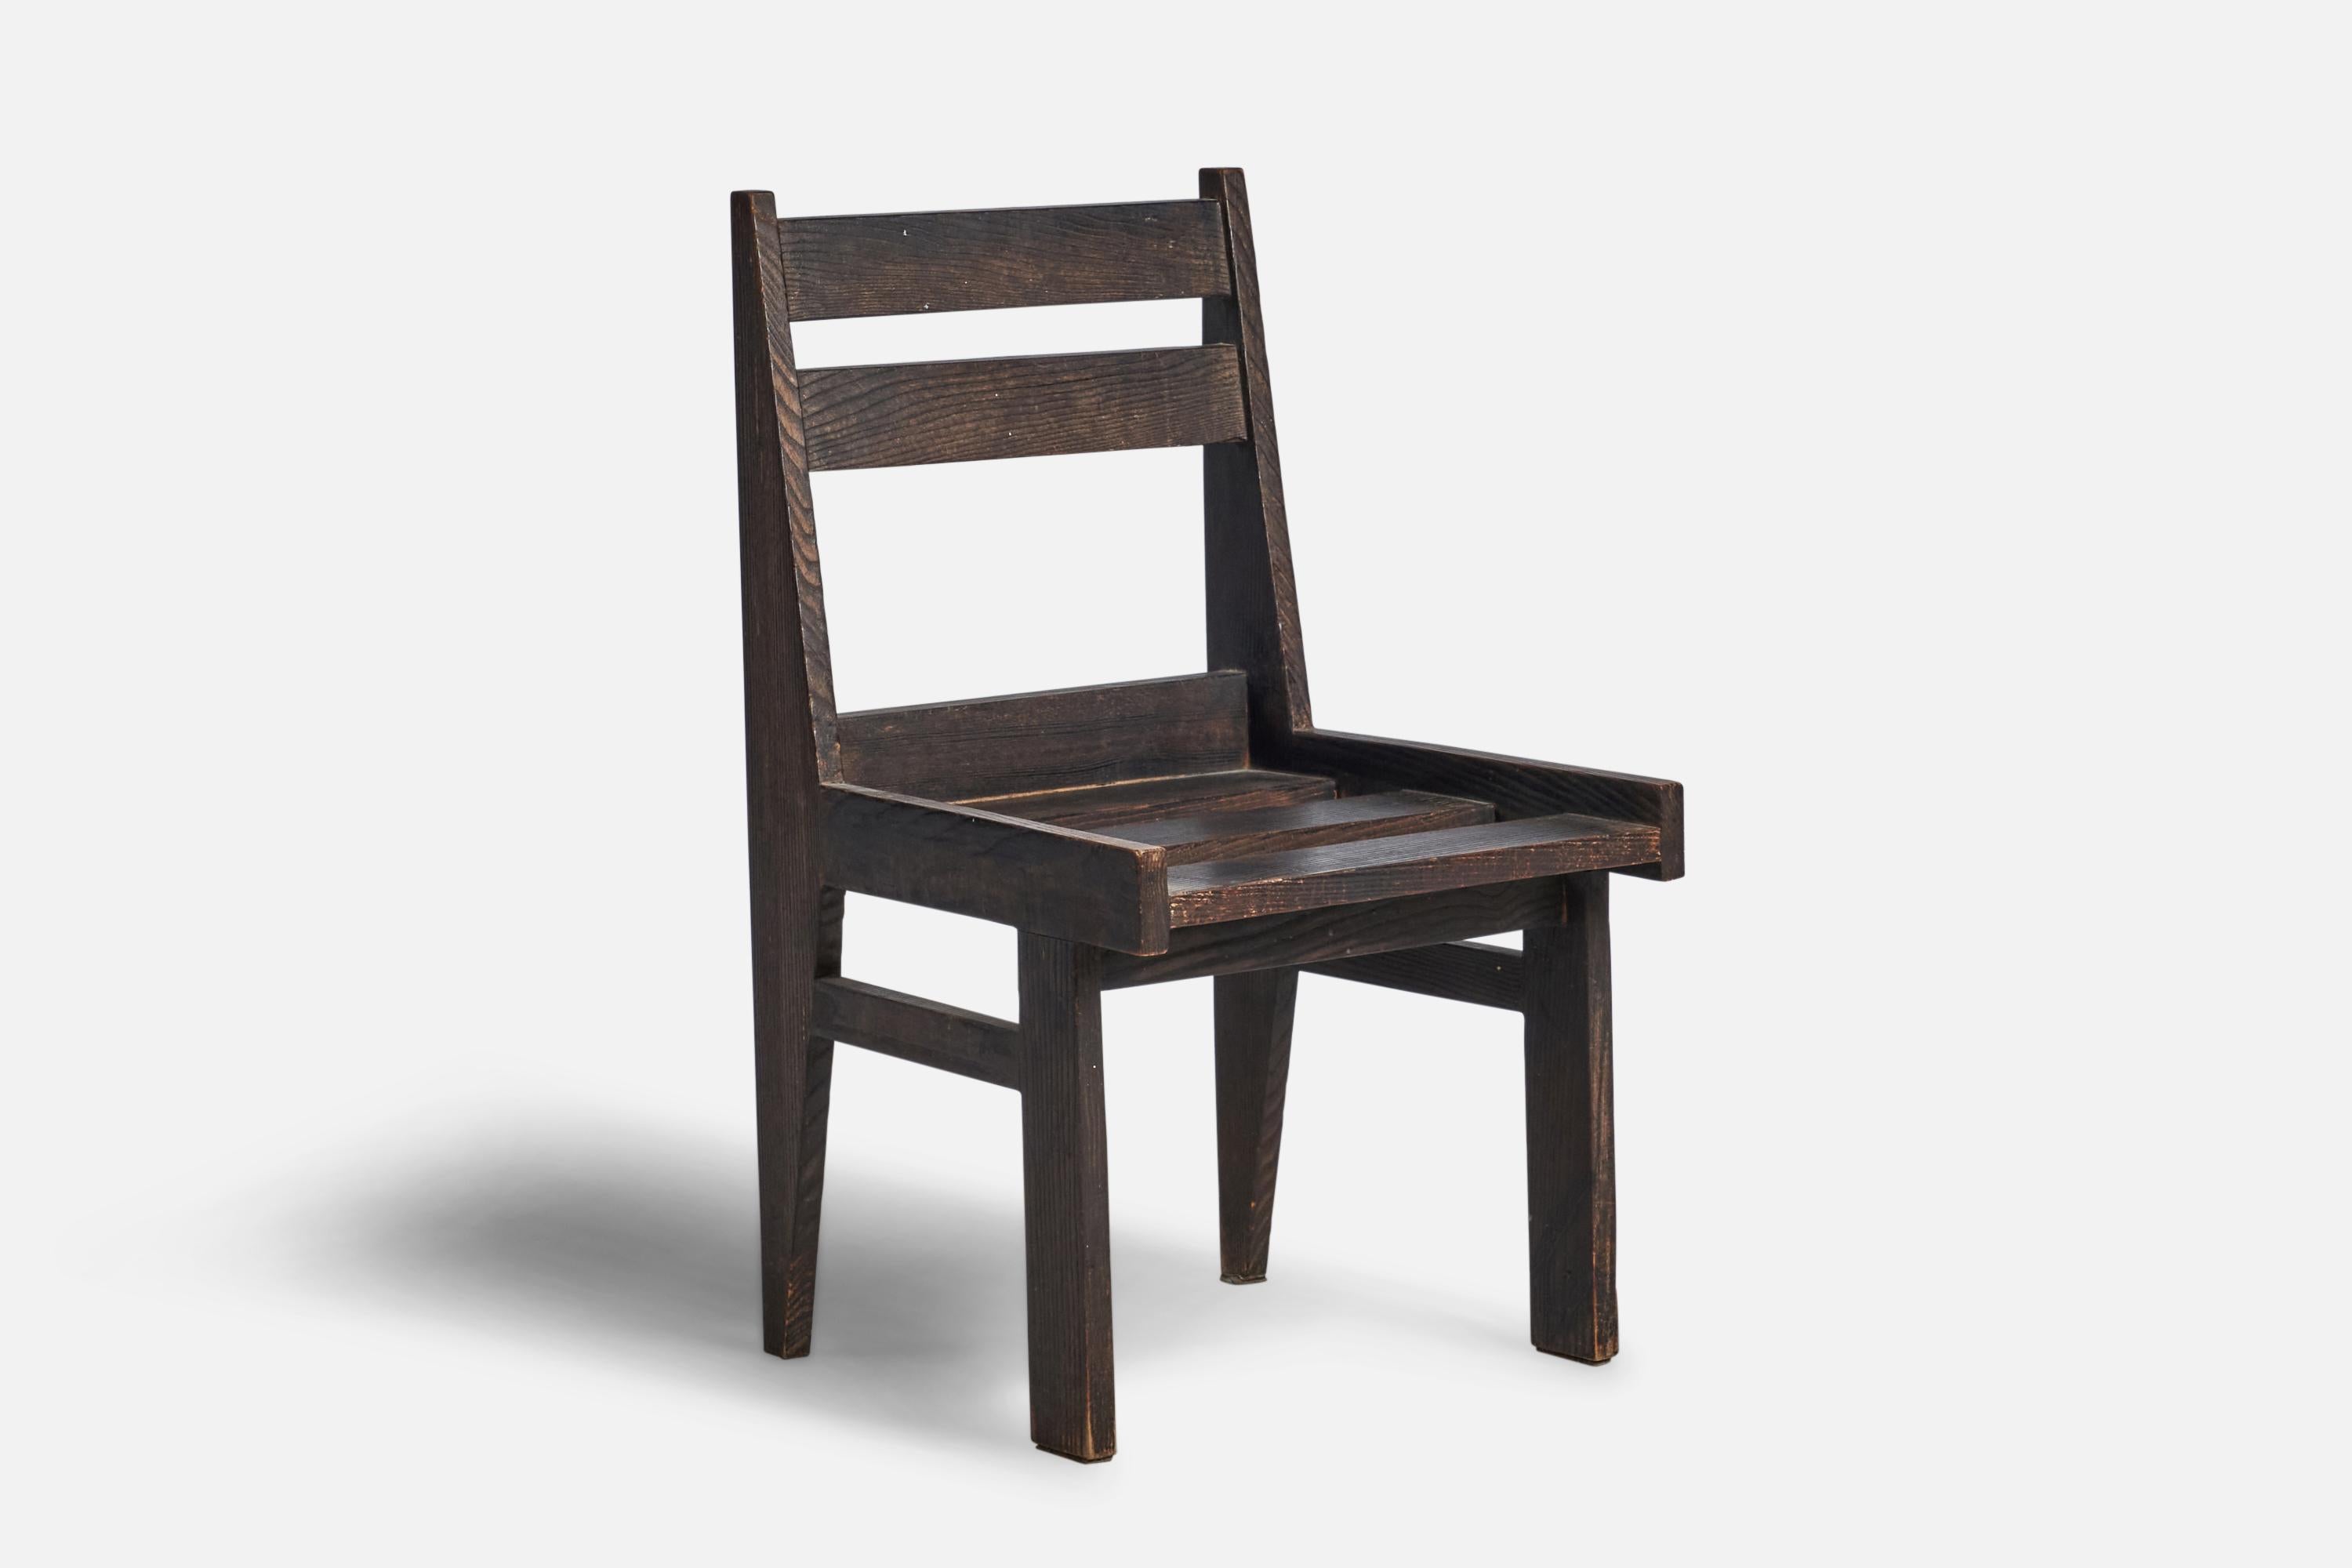 Ein Beistellstuhl aus dunkel gebeizter Eiche, entworfen und hergestellt in den Niederlanden, um 1940.

14,75